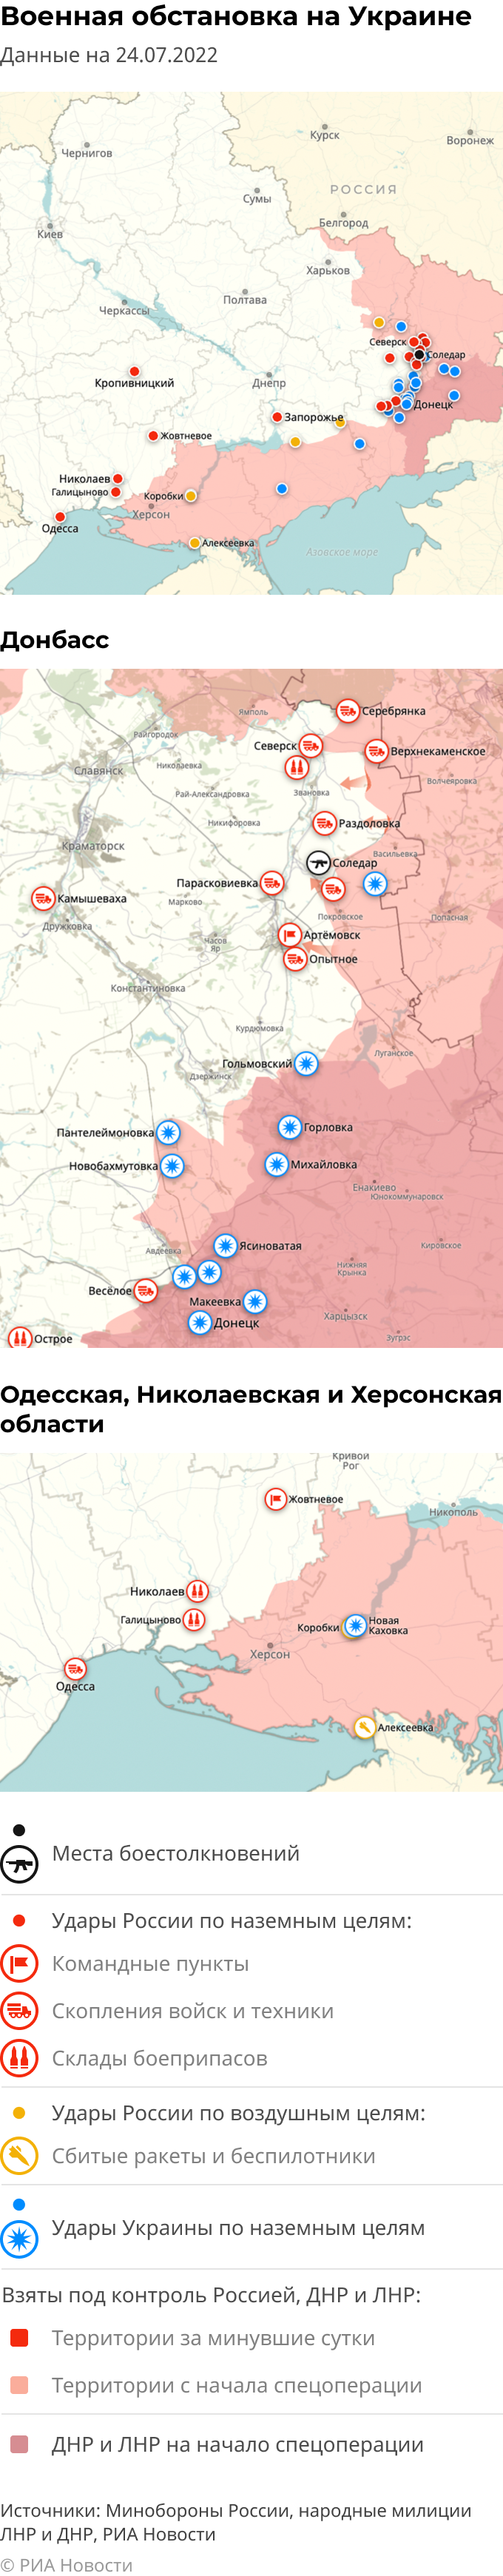 Карта спецоперации Вооруженных сил России на Украине на 24.07.2022 - РИАНовости, 24.07.2022